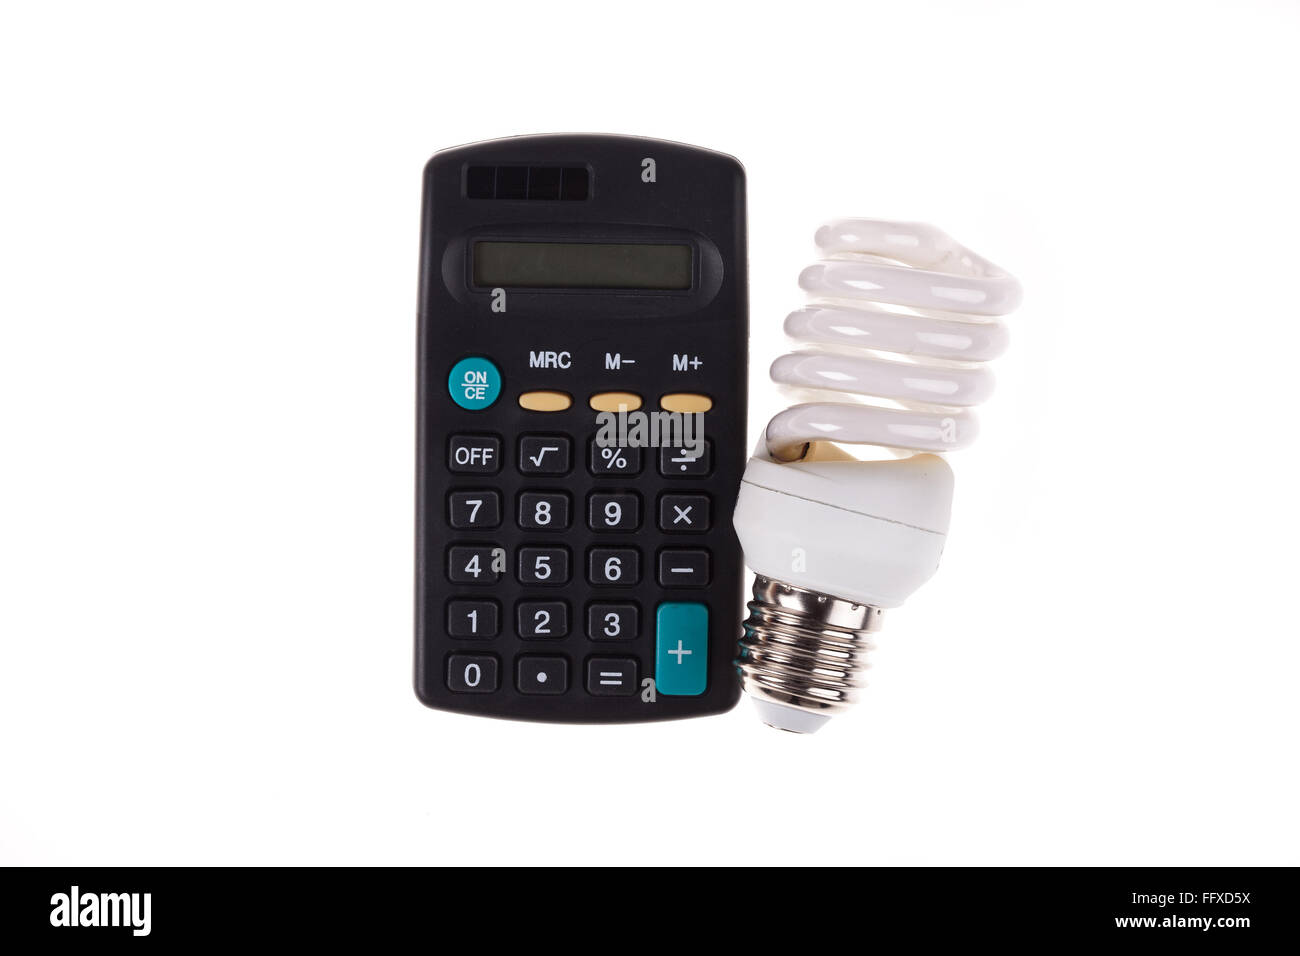 Risparmio energetico lampada e calcolatrice su sfondo bianco Foto Stock